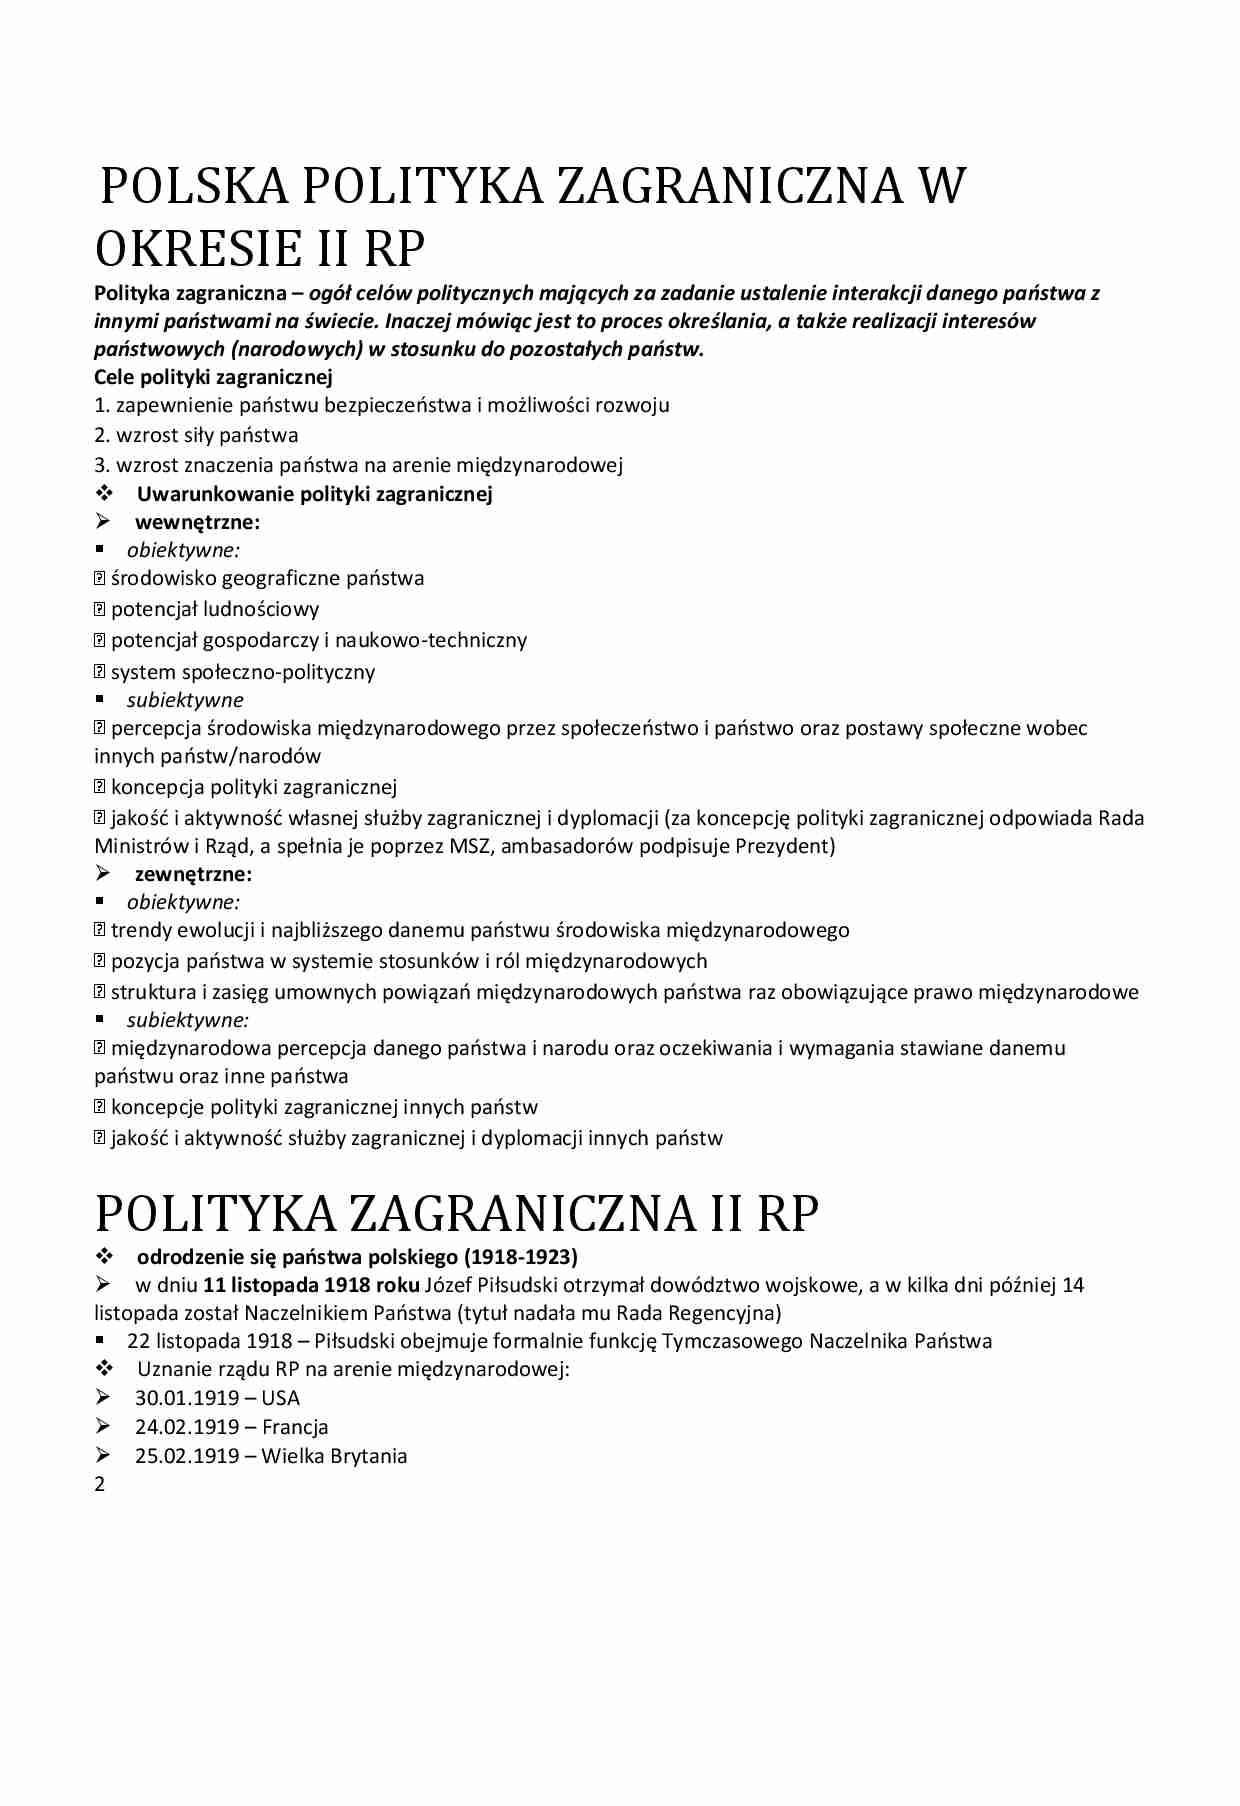 POLITYKA ZAGRANICZNA II RP - strona 1